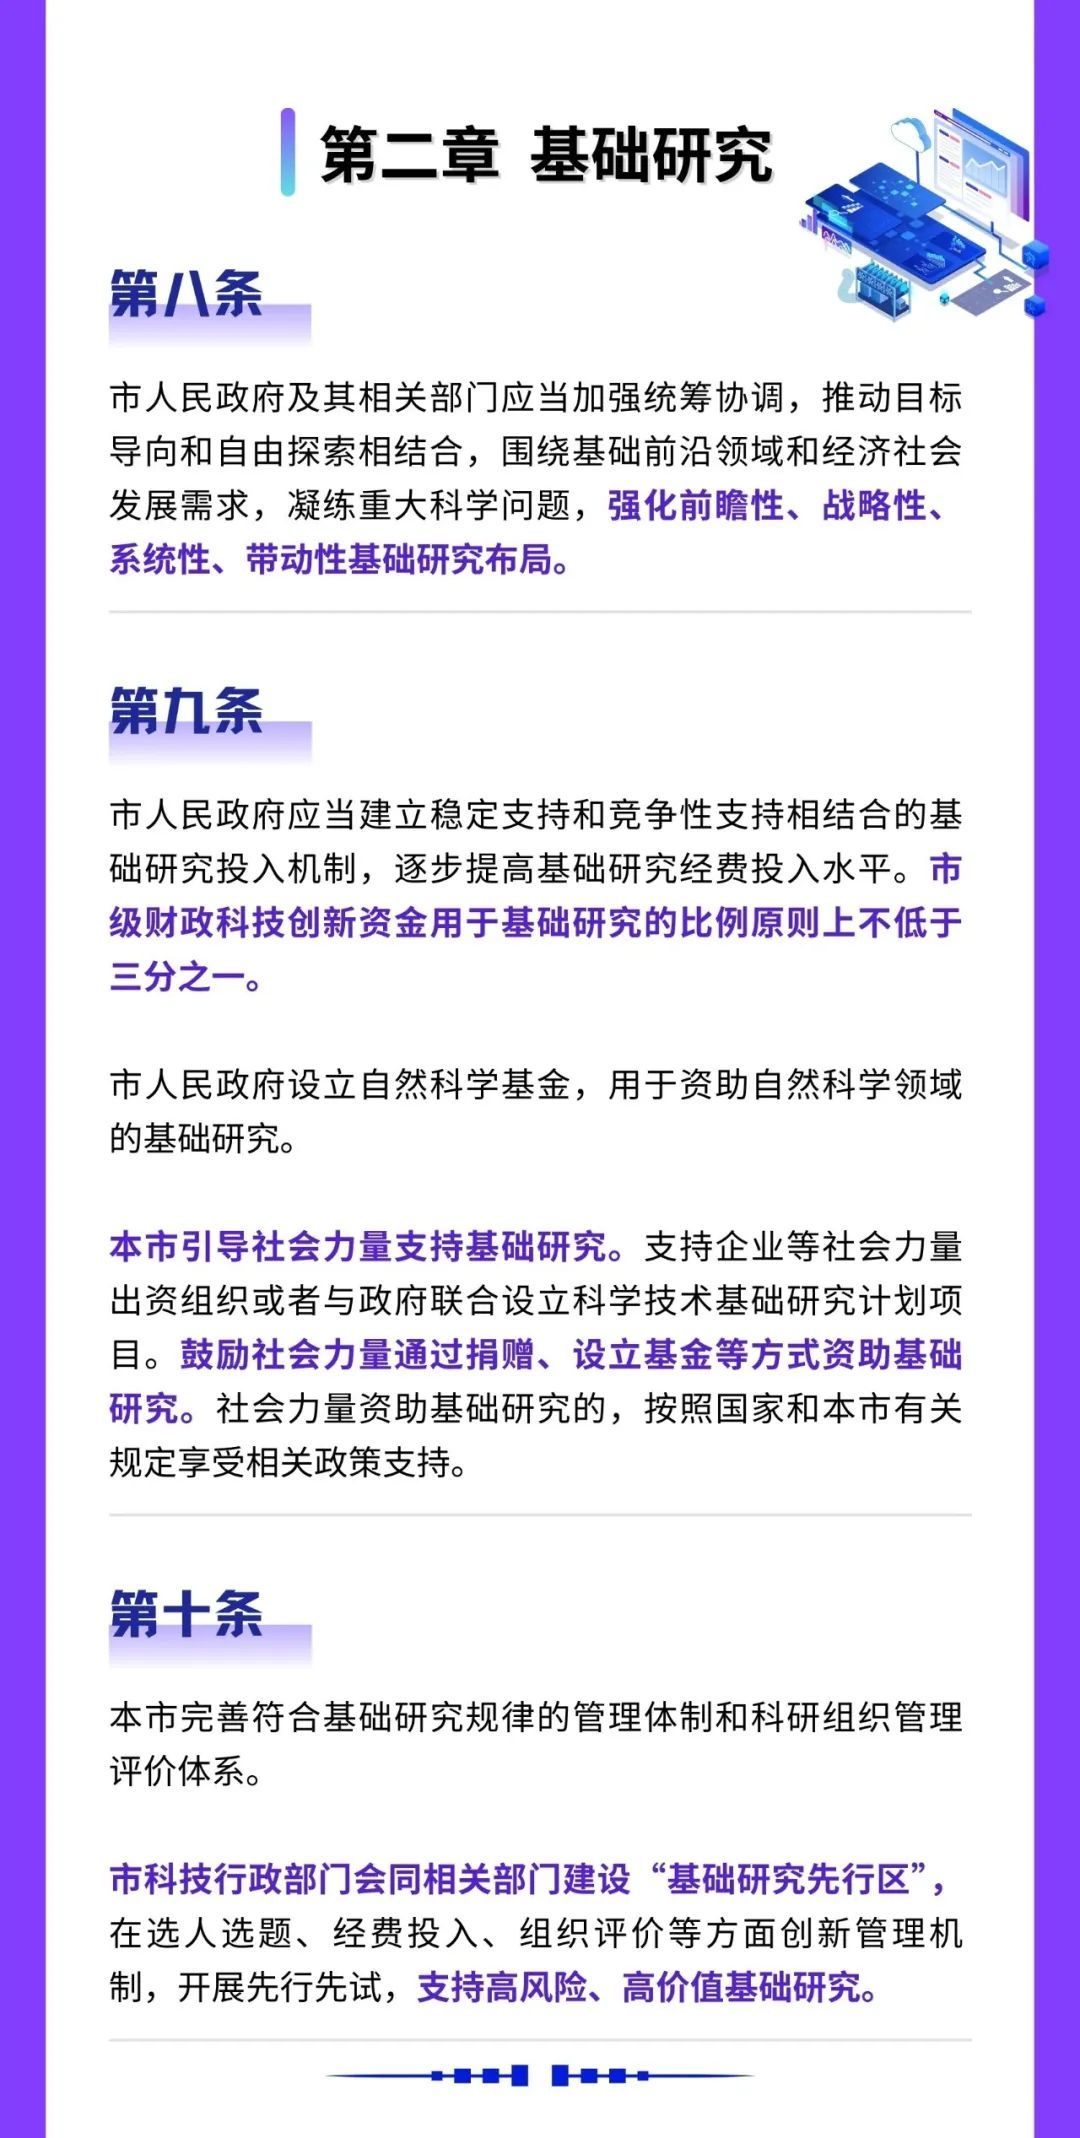 《上海市科学技术进步条例》(以下简称条例),自2024年6月1日起施行